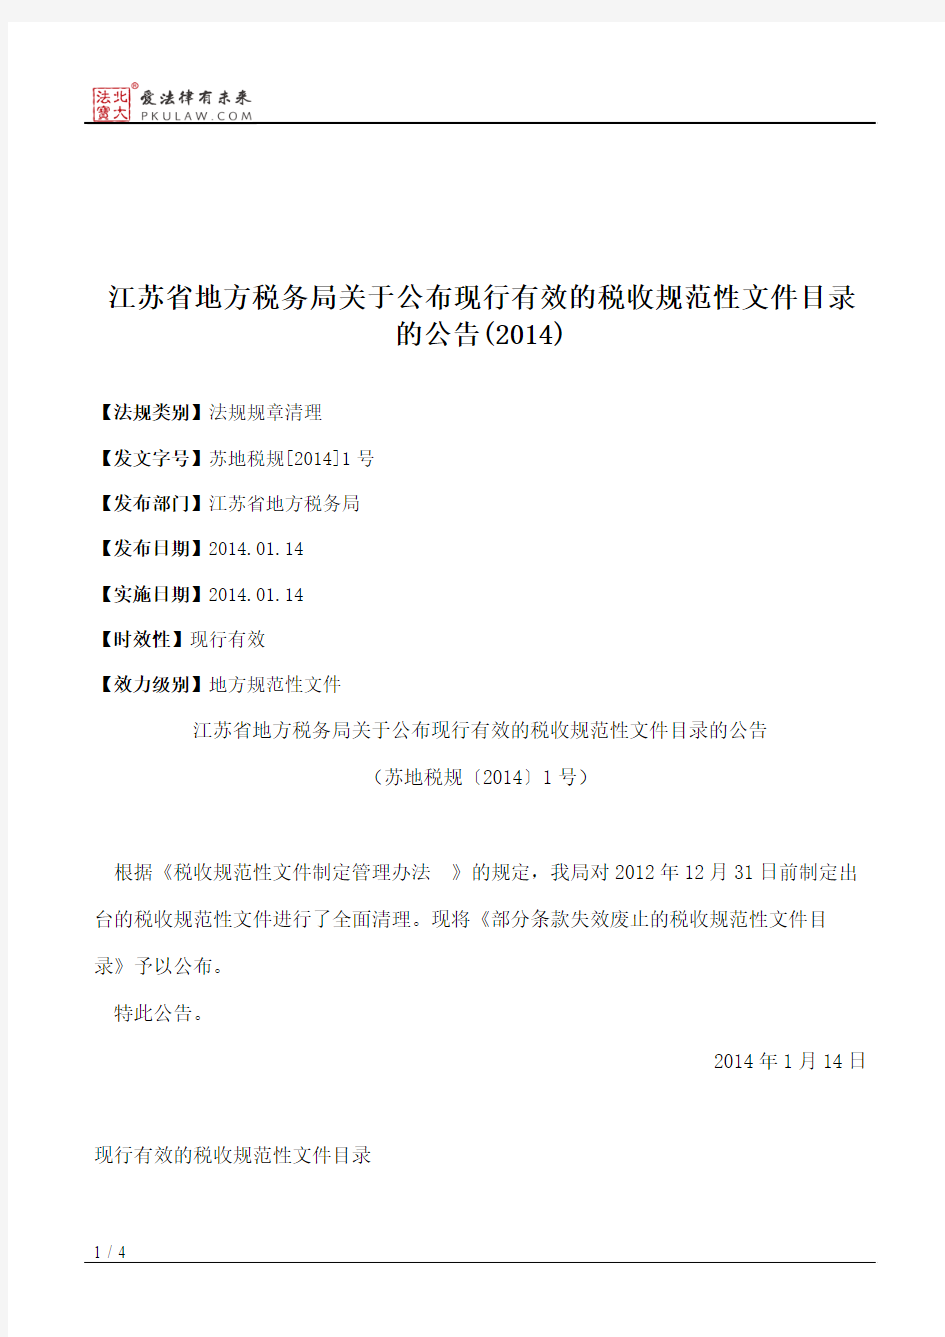 江苏省地方税务局关于公布现行有效的税收规范性文件目录的公告(2014)